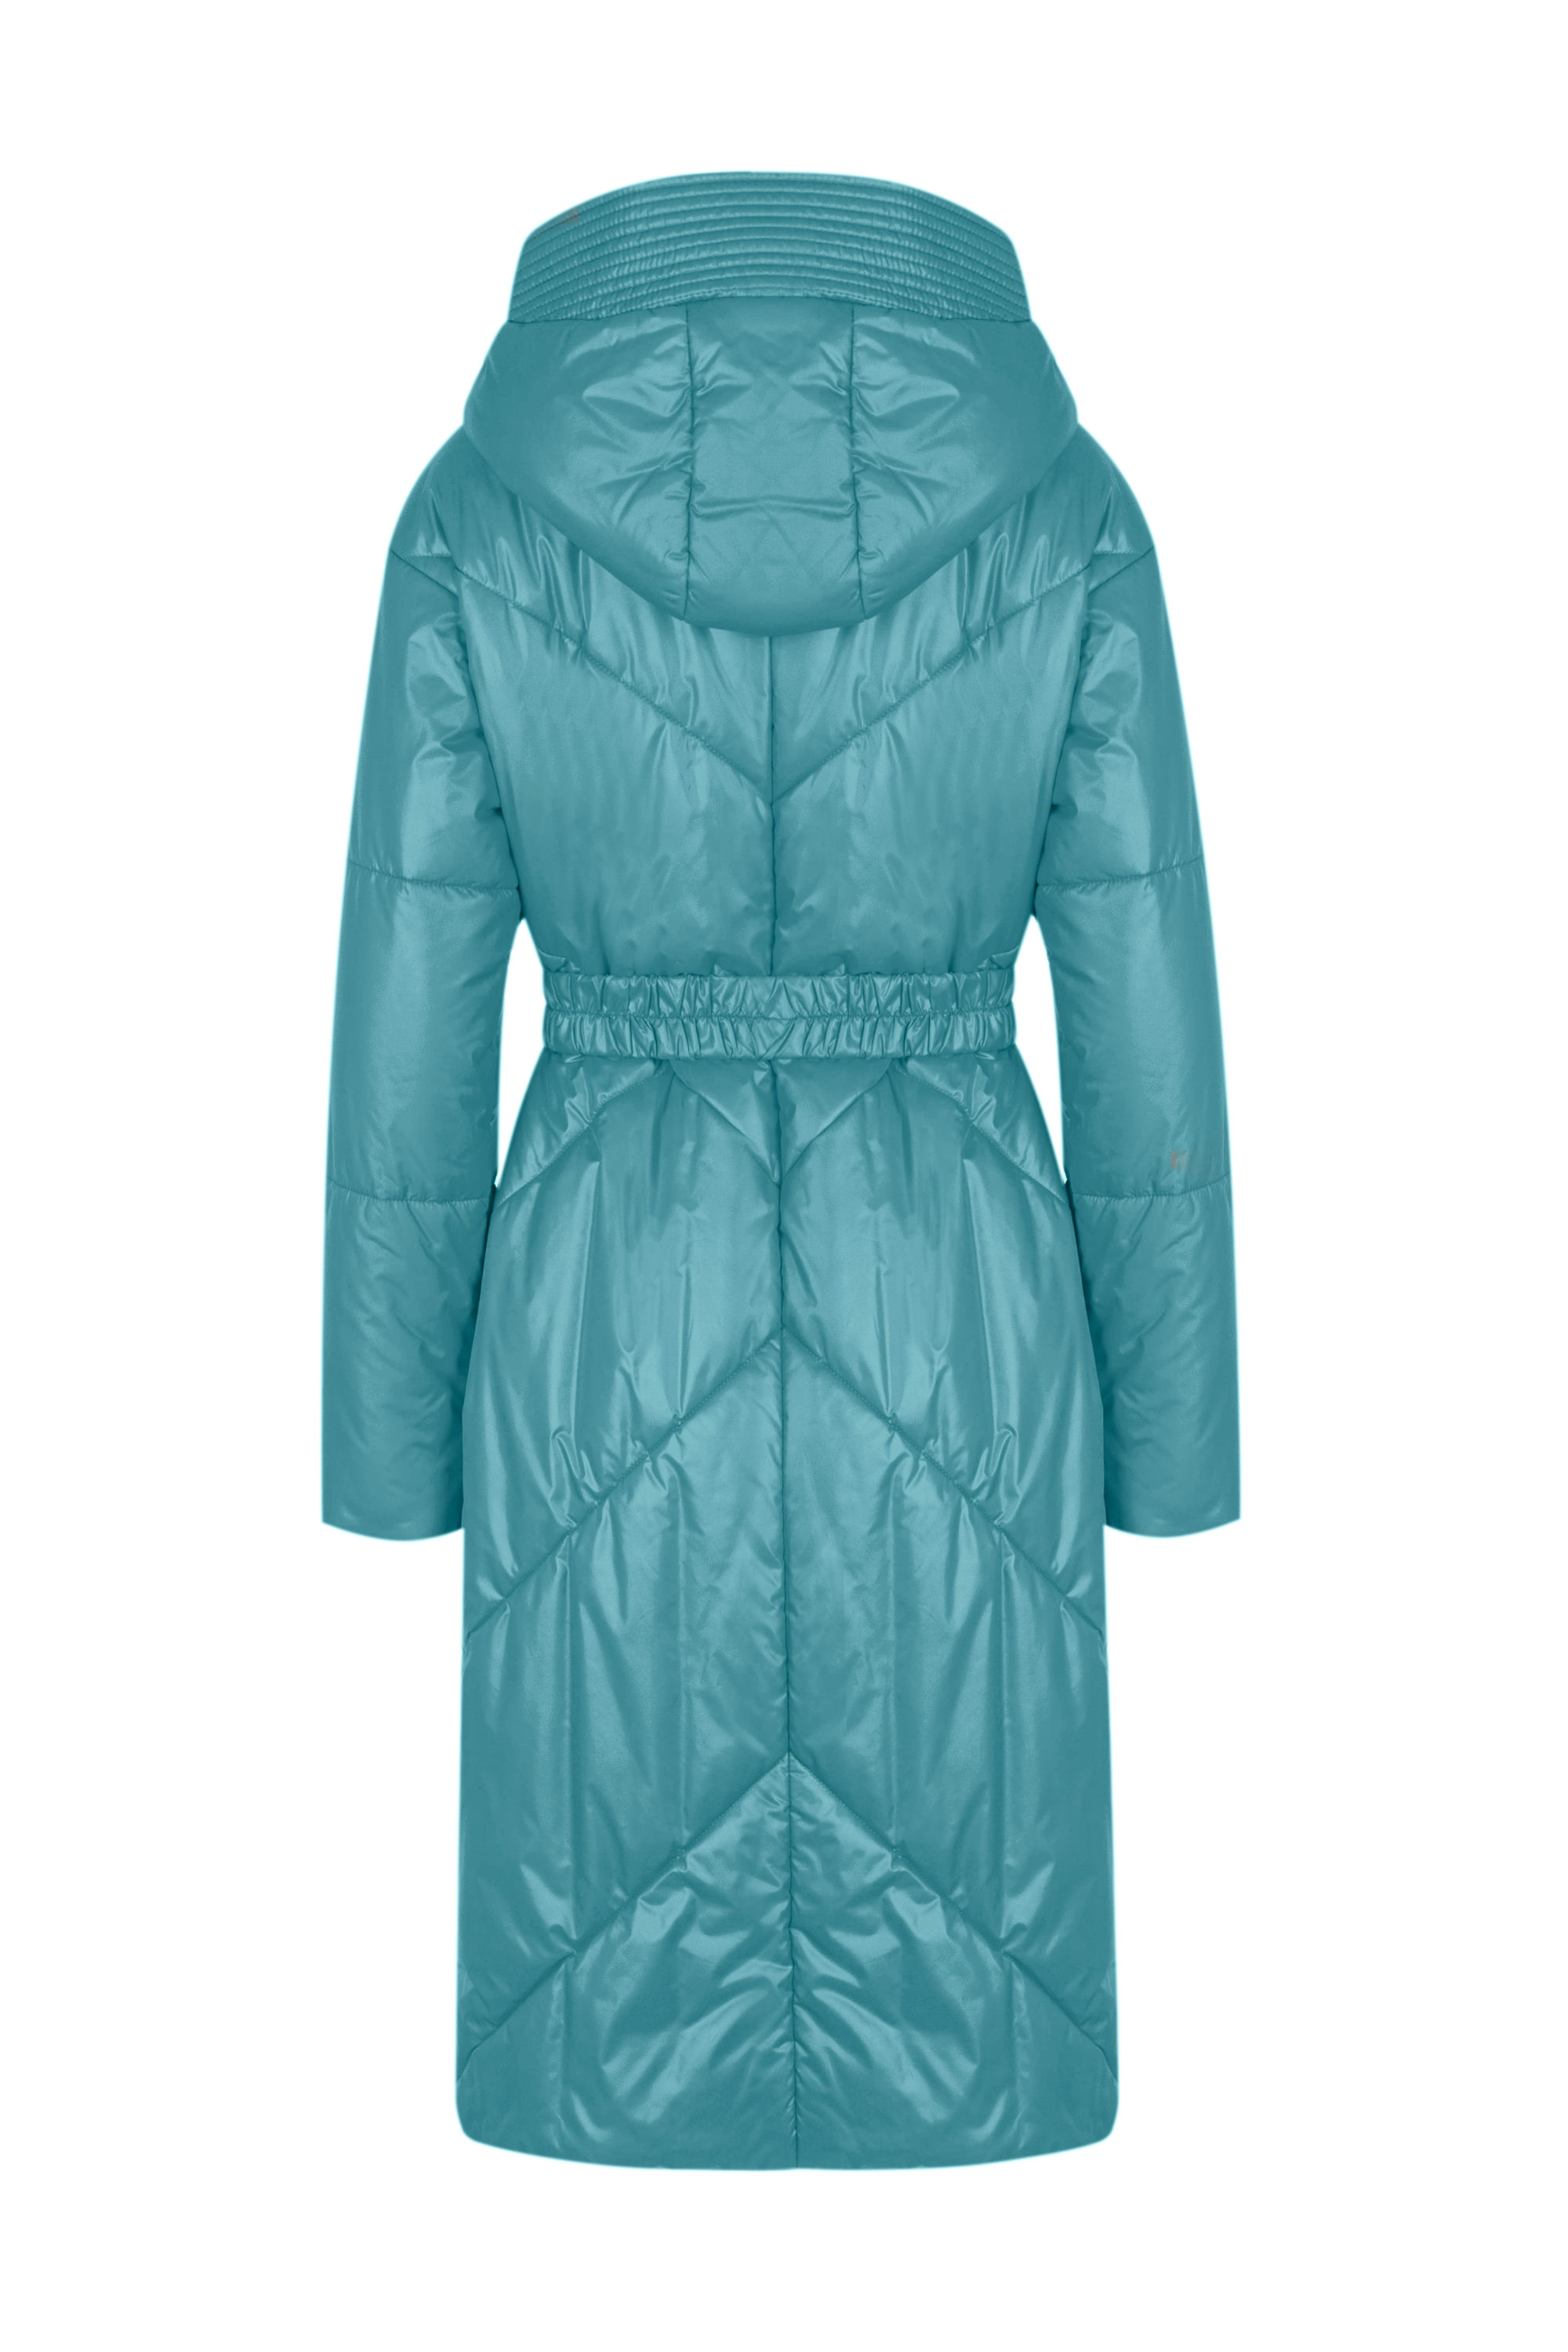 Пальто женское плащевое утепленное 5-12174-1